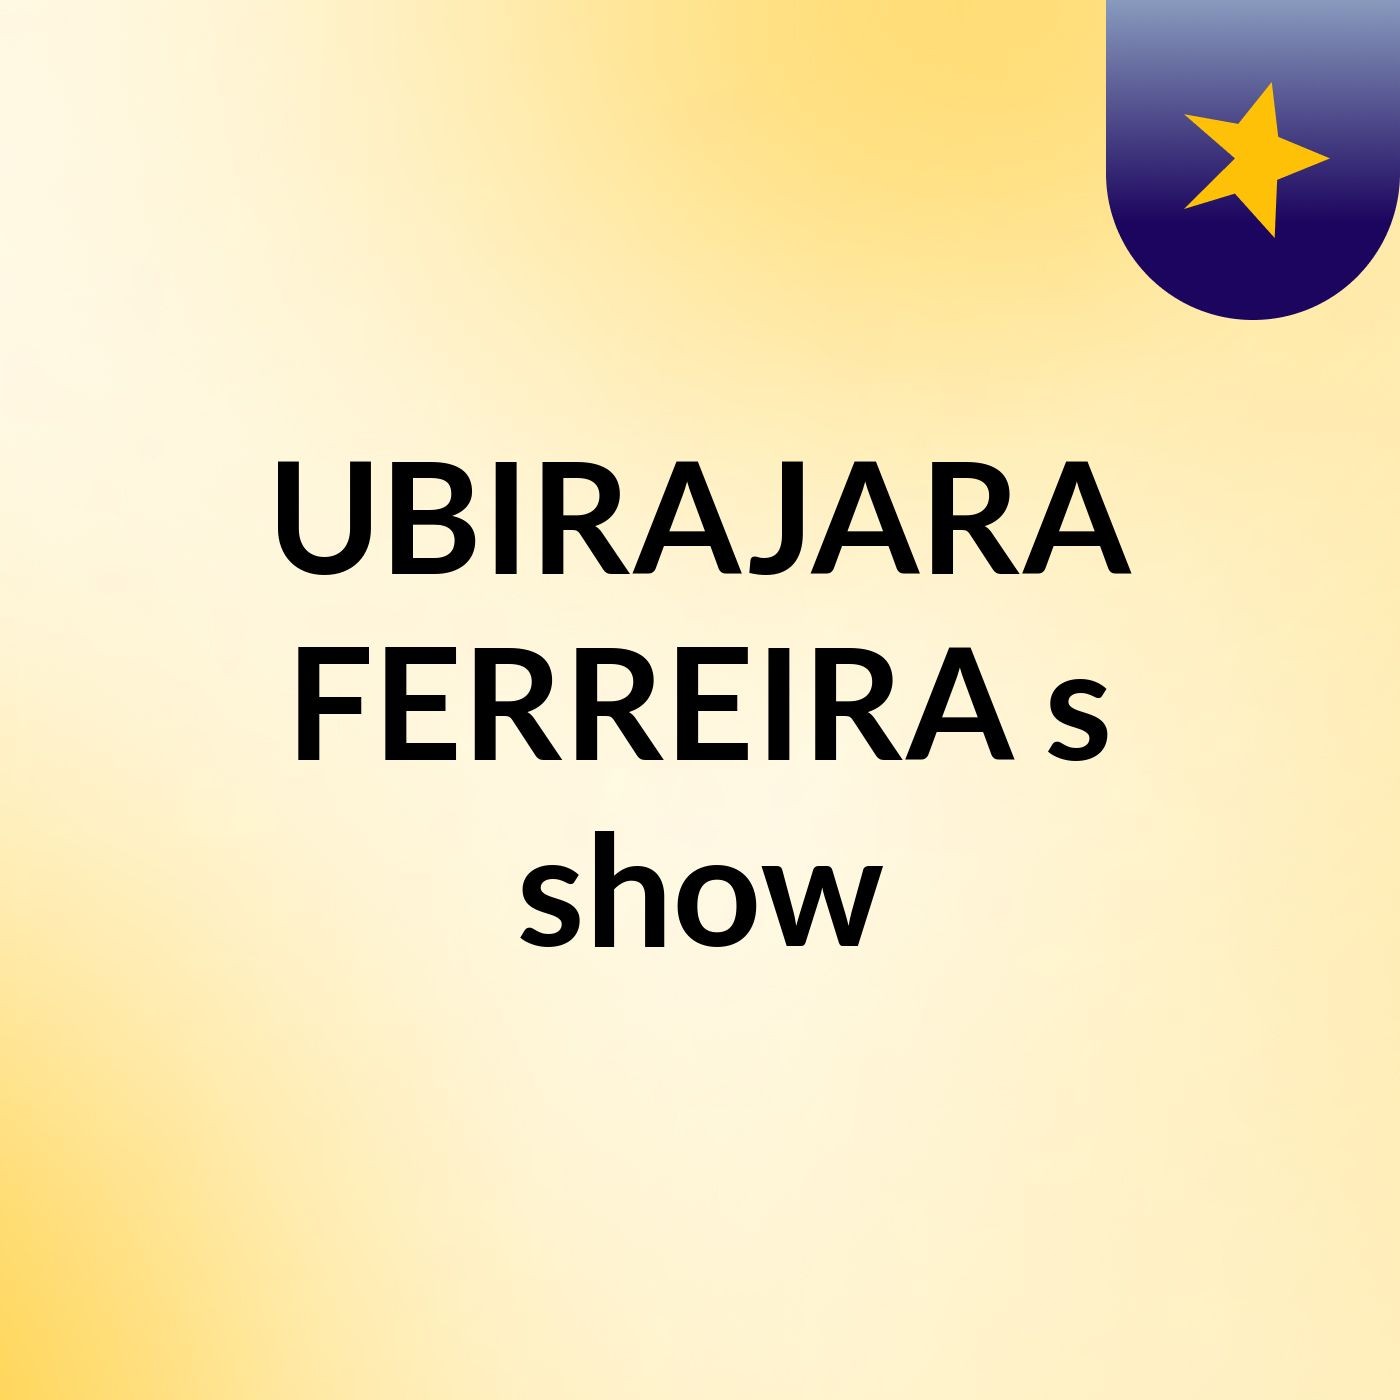 UBIRAJARA FERREIRA's show